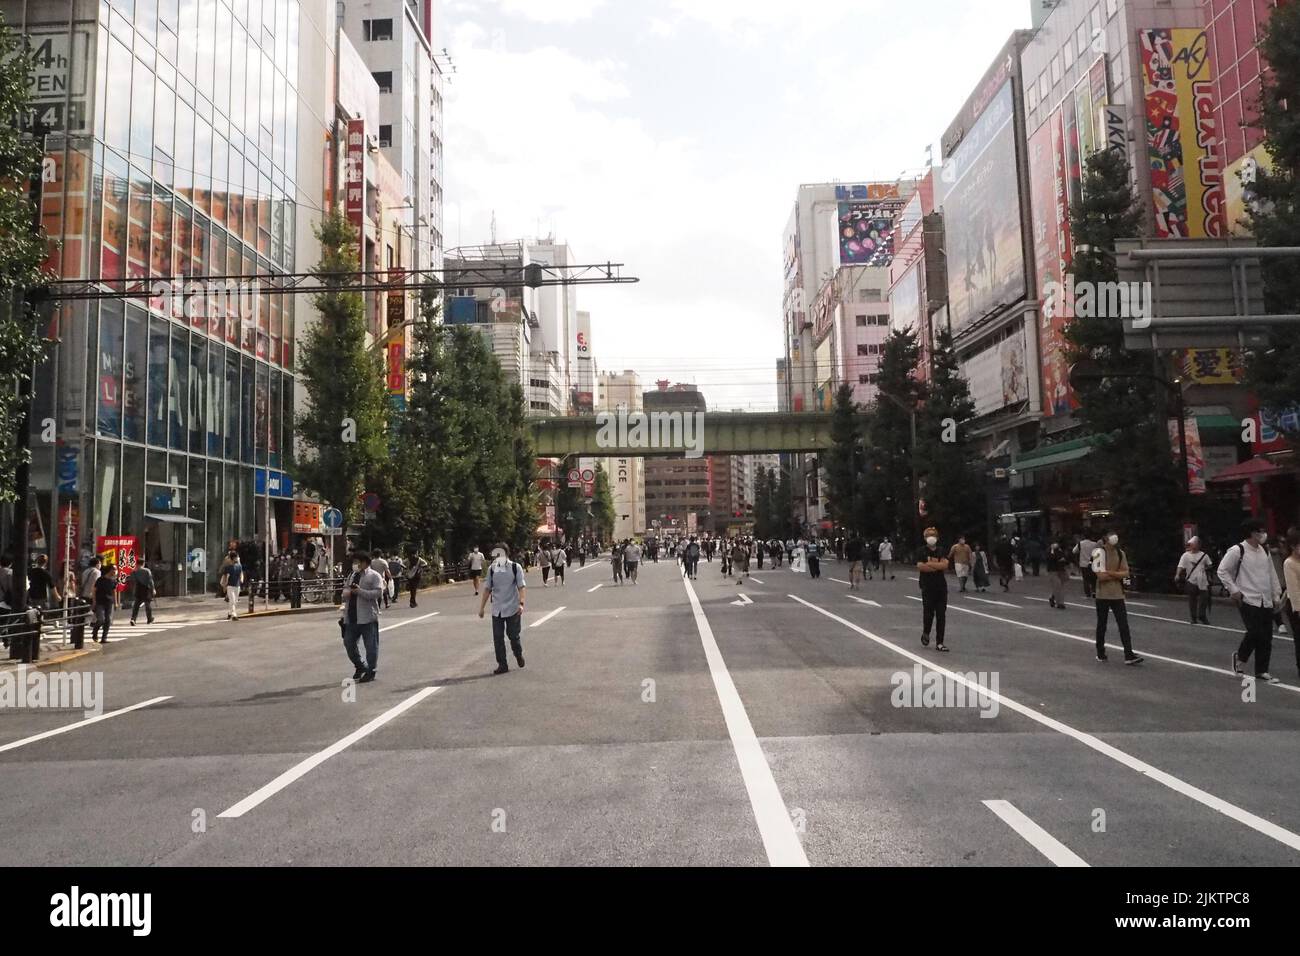 Eine wunderschöne Aufnahme von Menschen, die auf einer autofreien Straße in Akihabara, Tokio, spazieren gehen Stockfoto